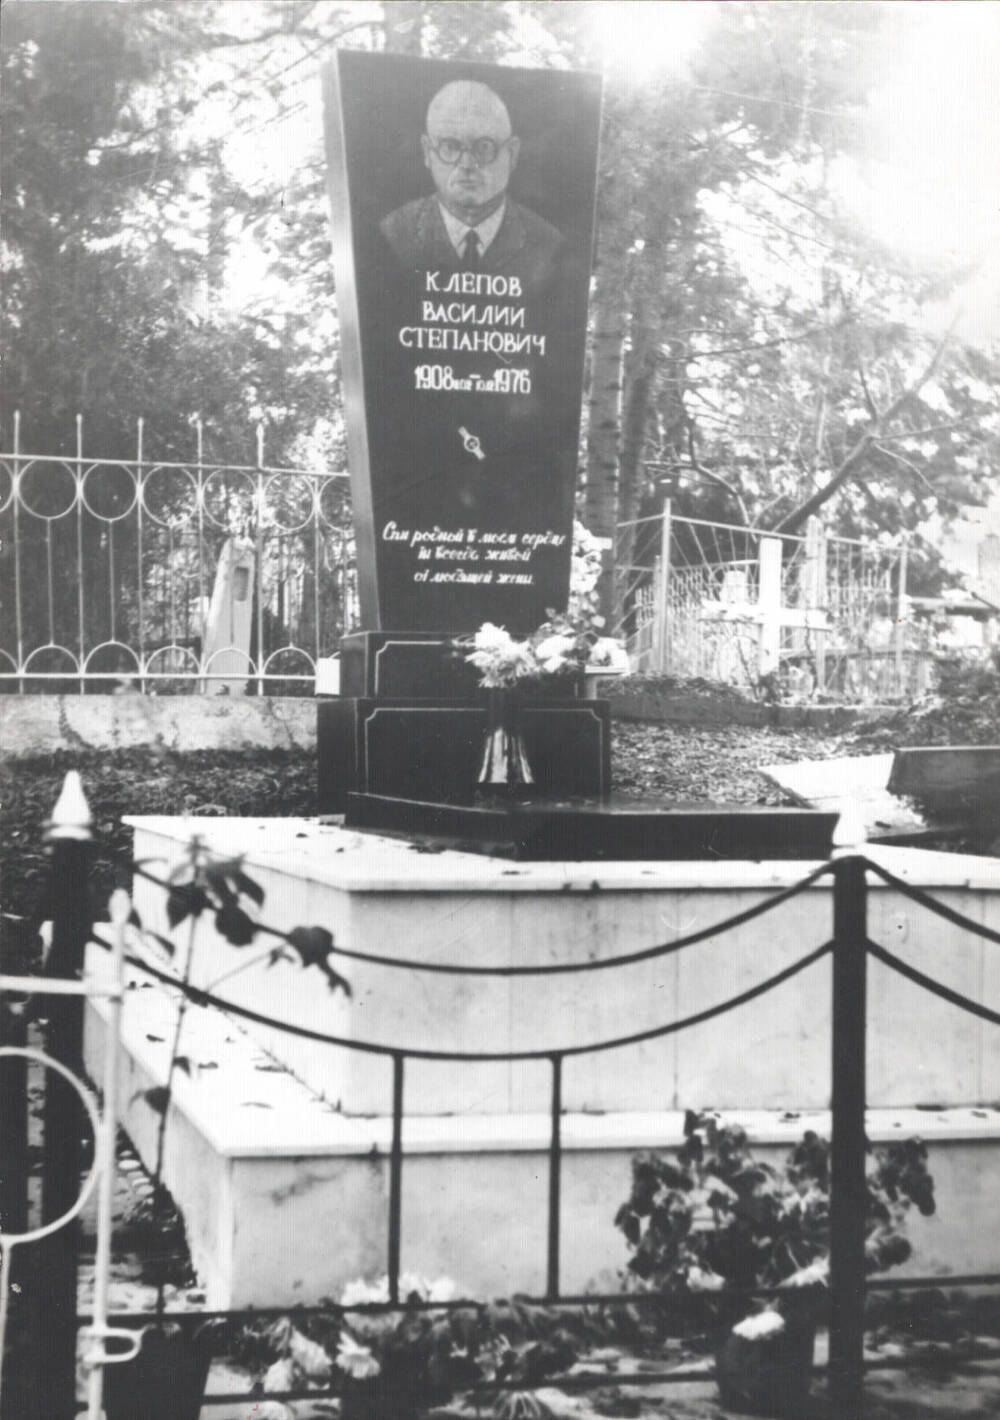 Фото. Памятник на могиле Клепова Василия Степановича на кладбище в г. Сочи.